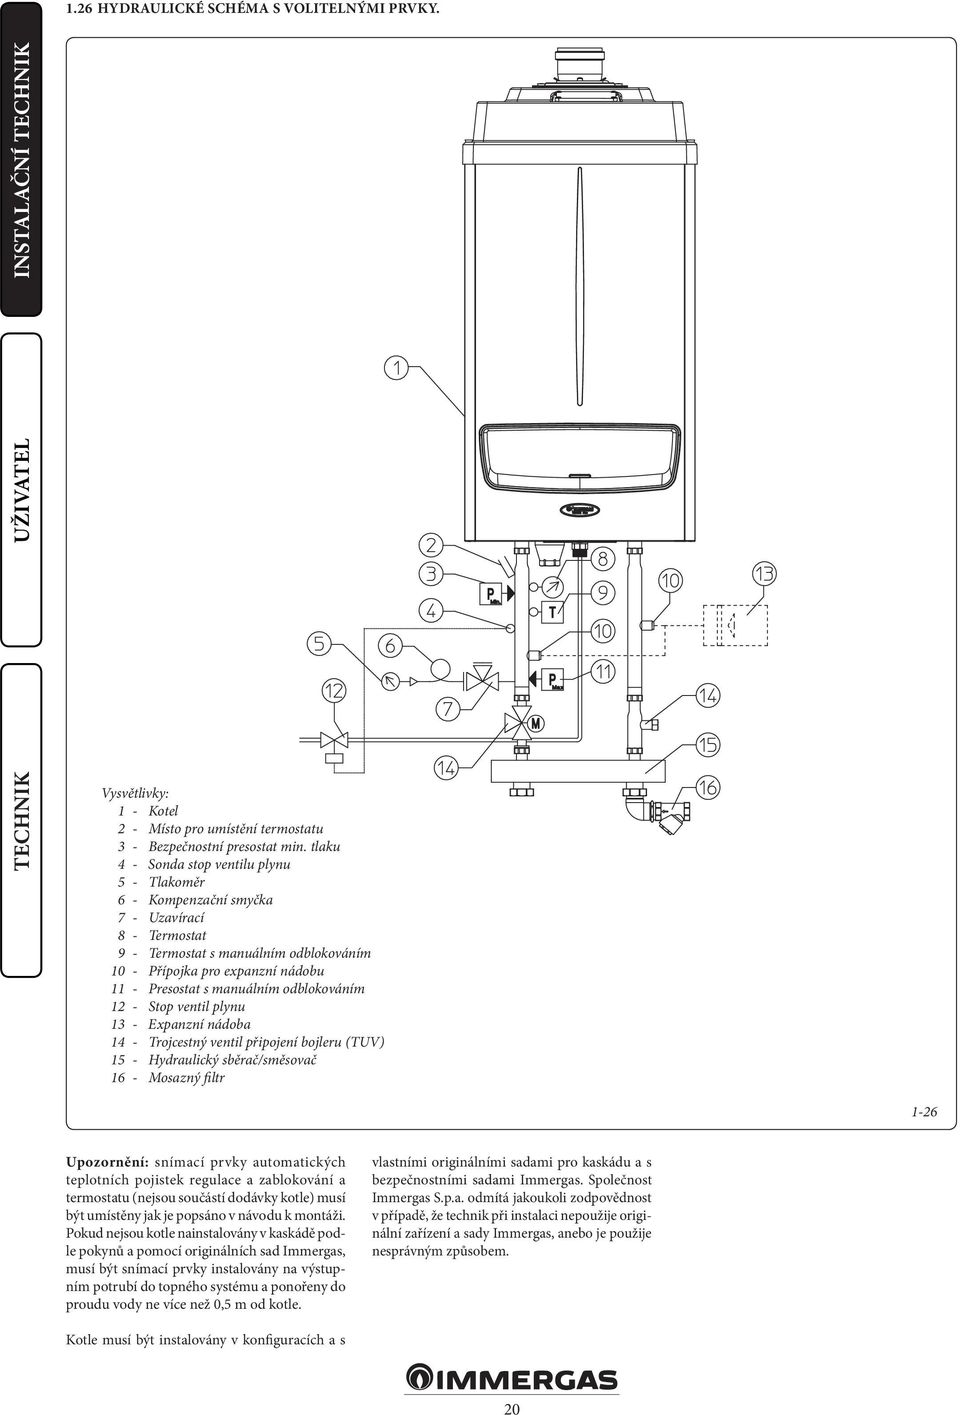 odblokováním 12 - Stop ventil plynu 13 - Expanzní nádoba 14 - Trojcestný ventil připojení bojleru (TUV) 15 - Hydraulický sběrač/směsovač 16 - Mosazný filtr 1-26 Upozornění: snímací prvky